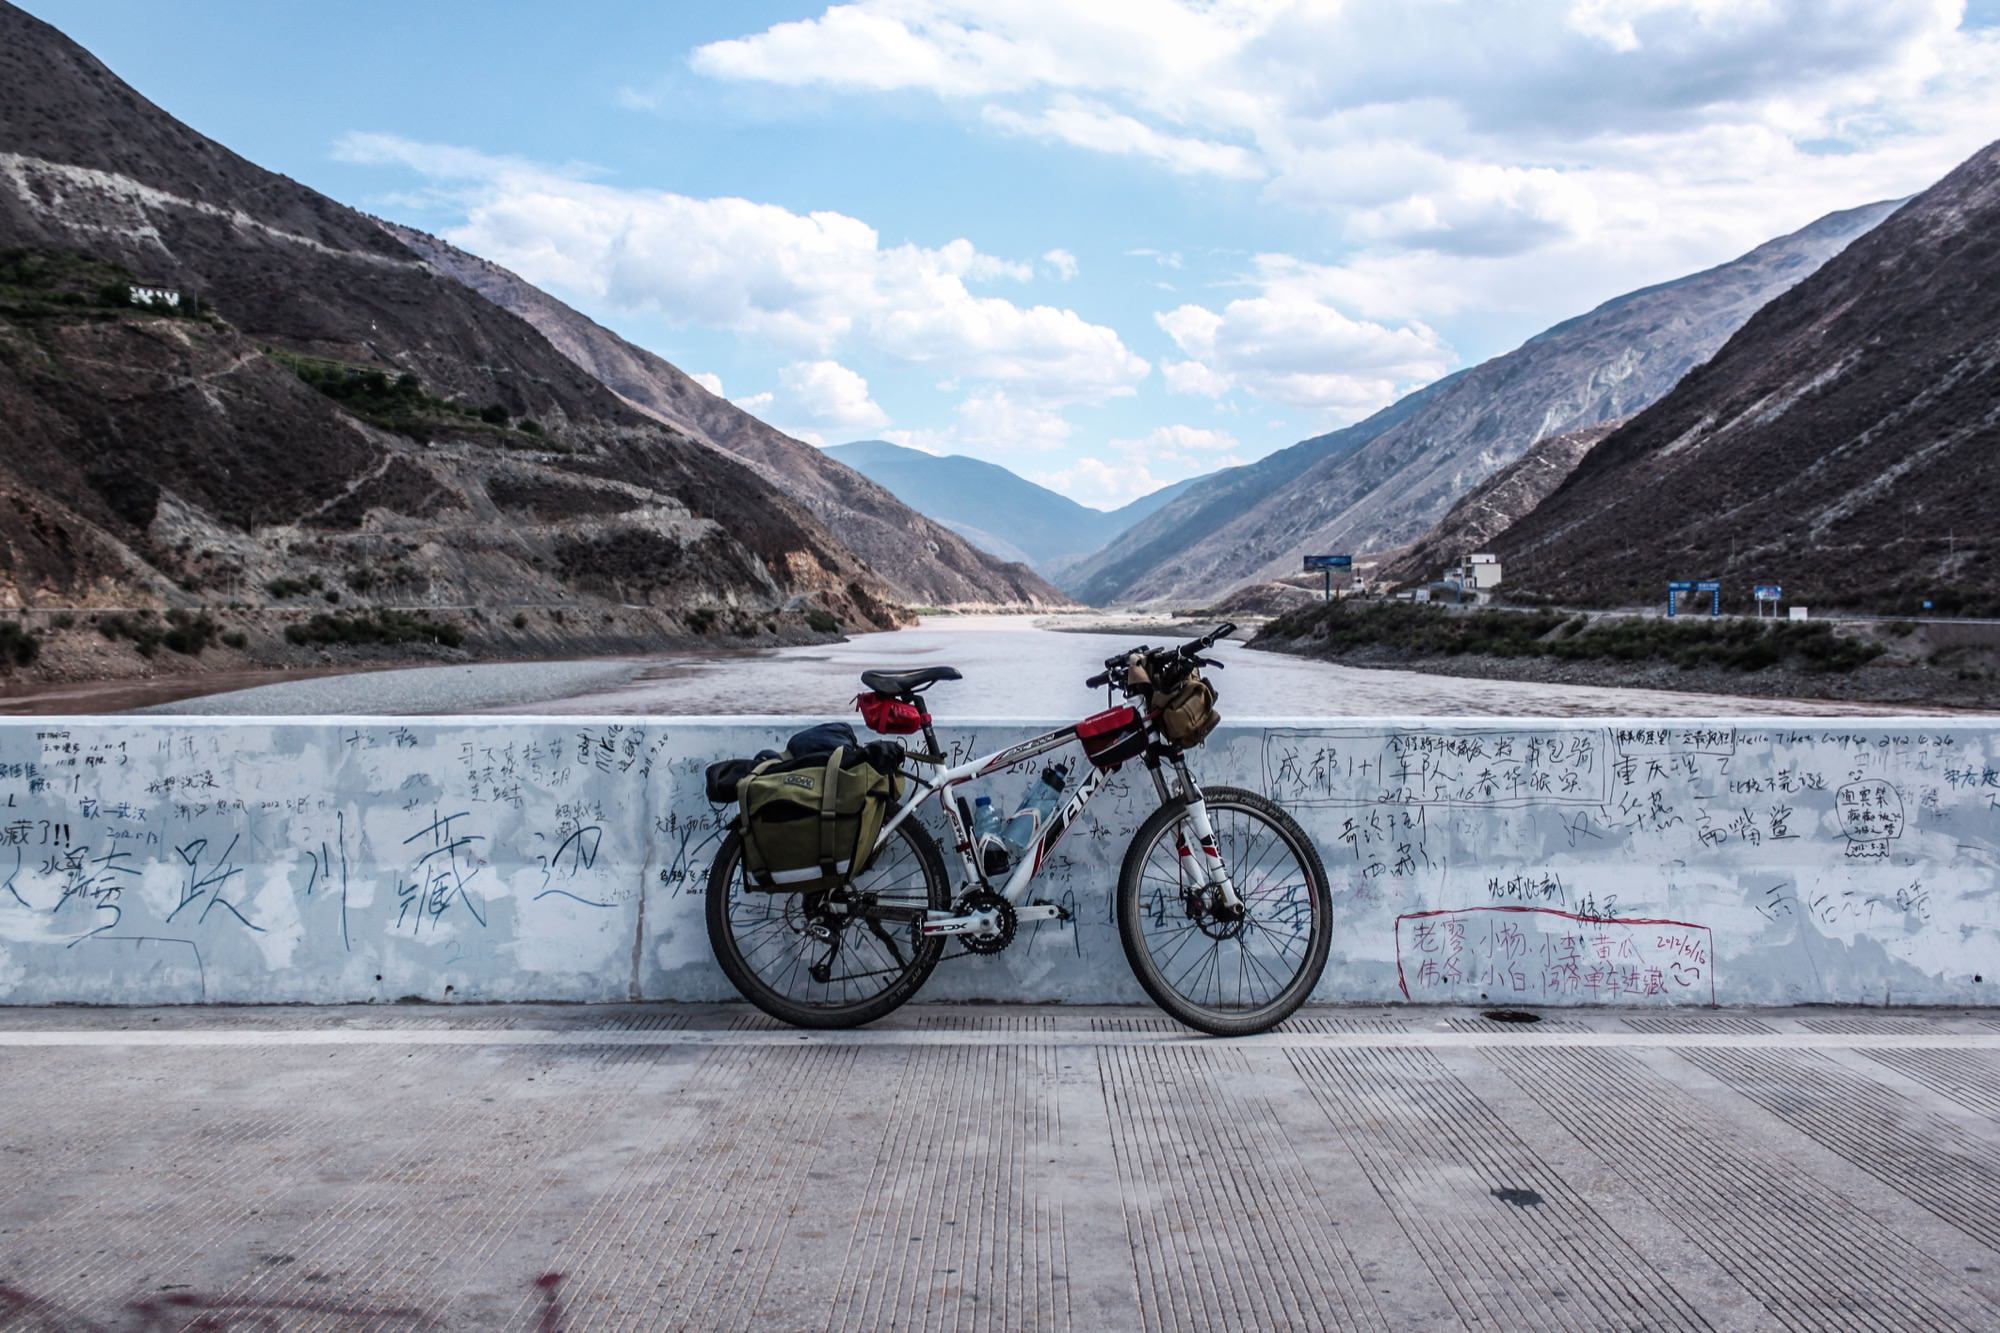 西藏 | 骑行川藏四千里:2012年的青春影像